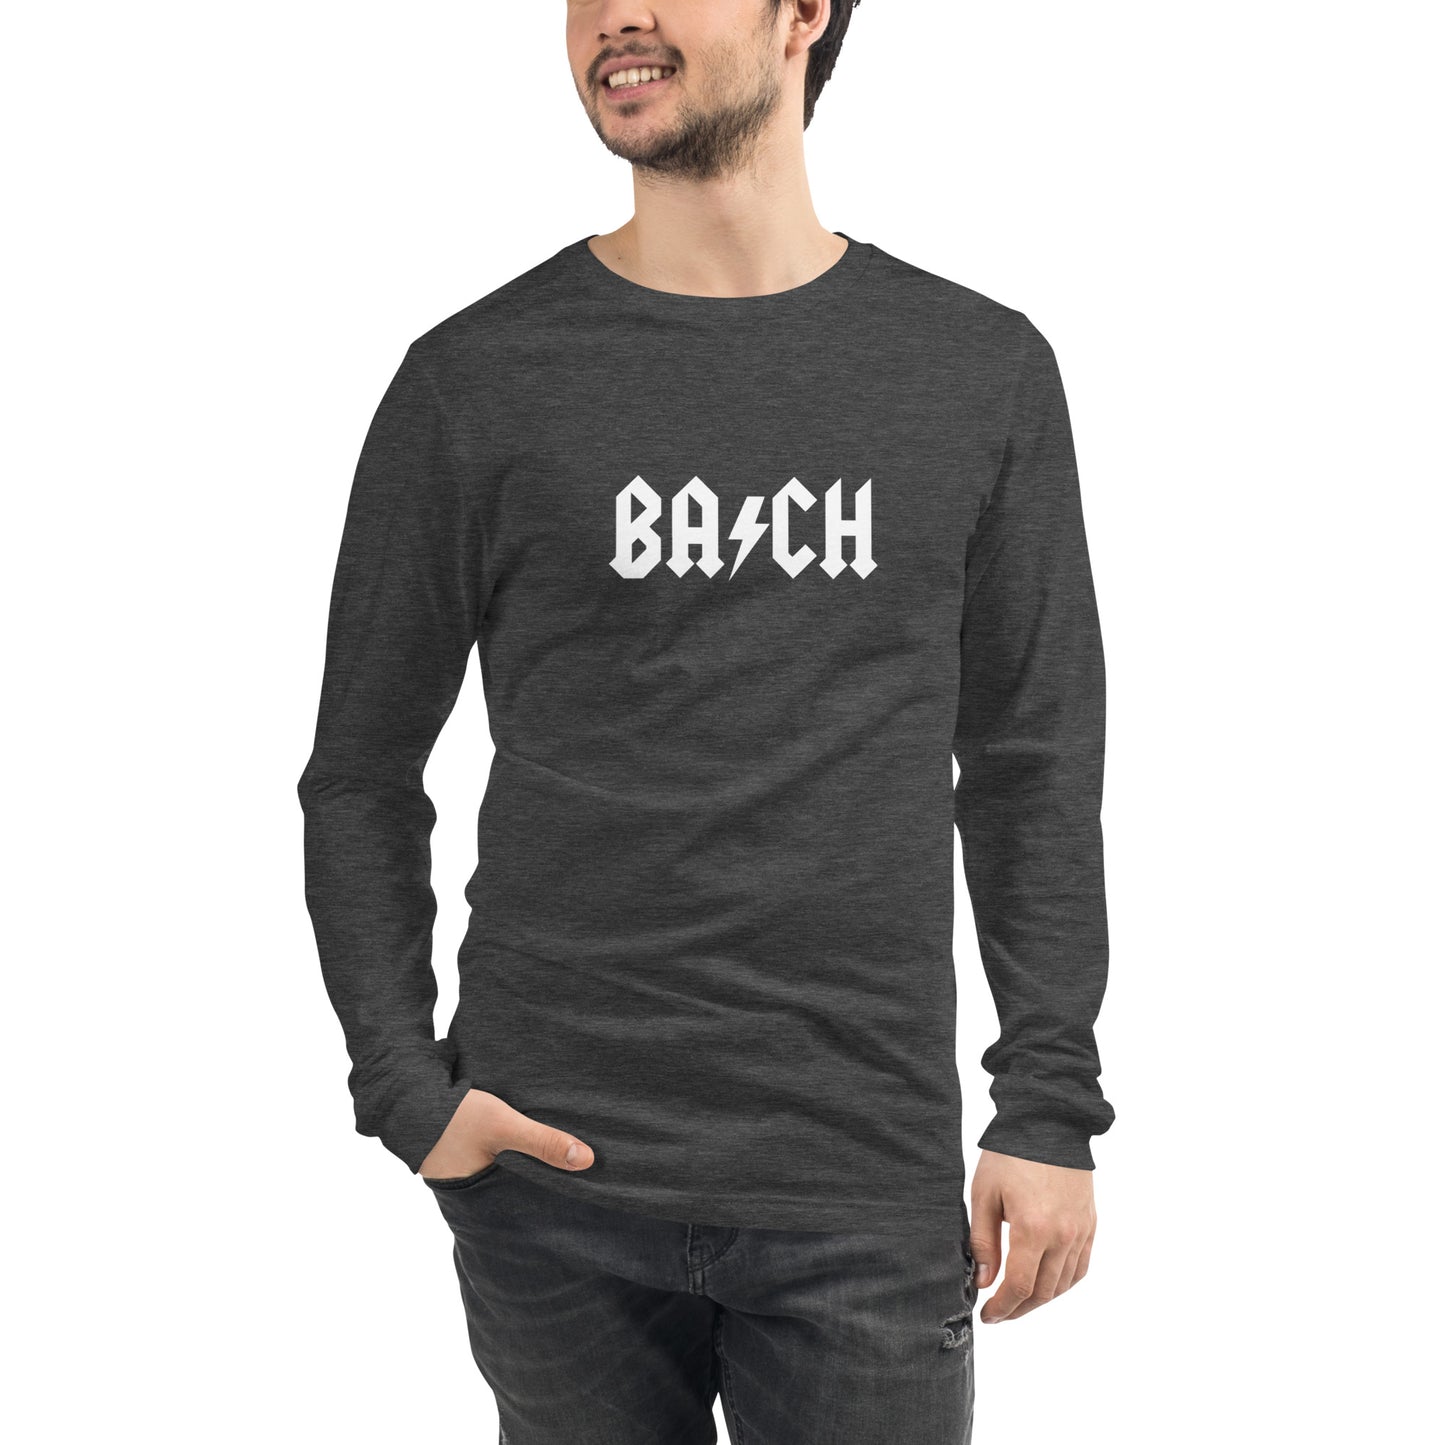 Bach - Unisex Long Sleeve Tee